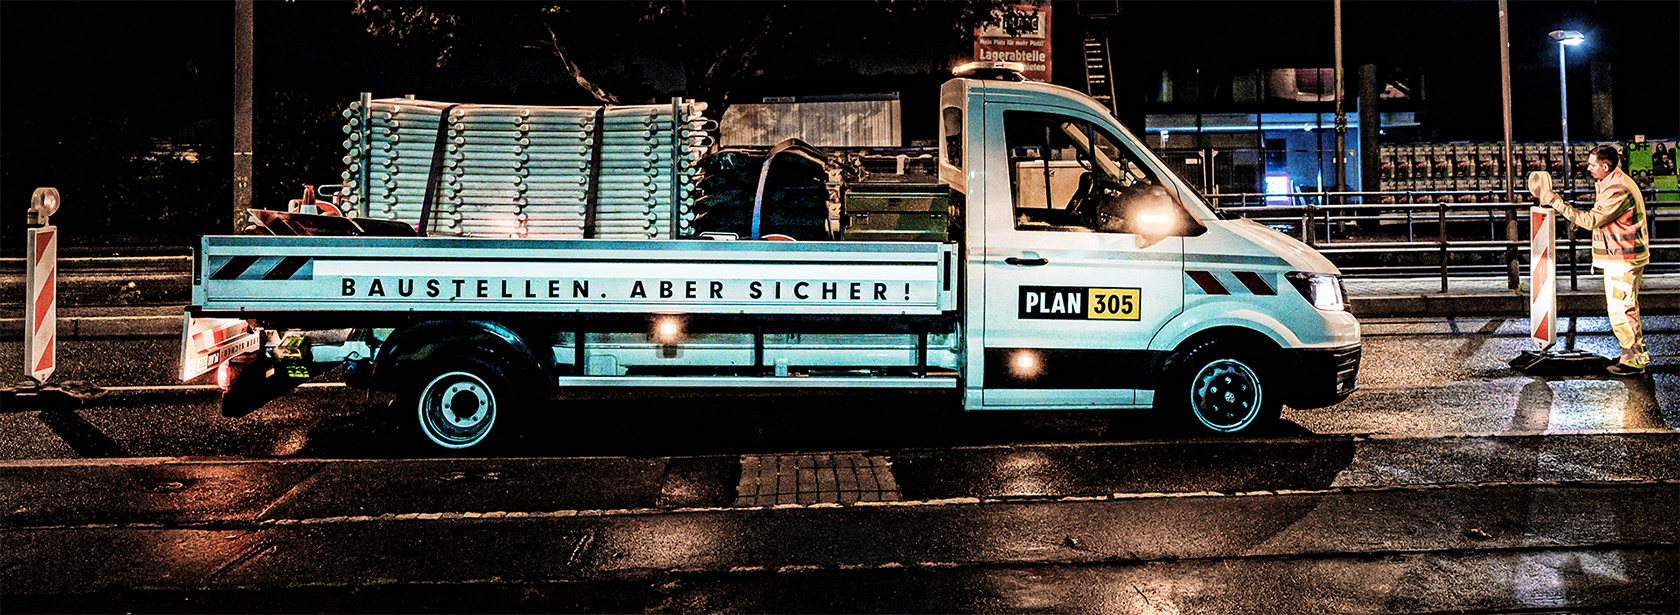 Baustellenabsicherung von Plan 305 GmbH bei Nacht